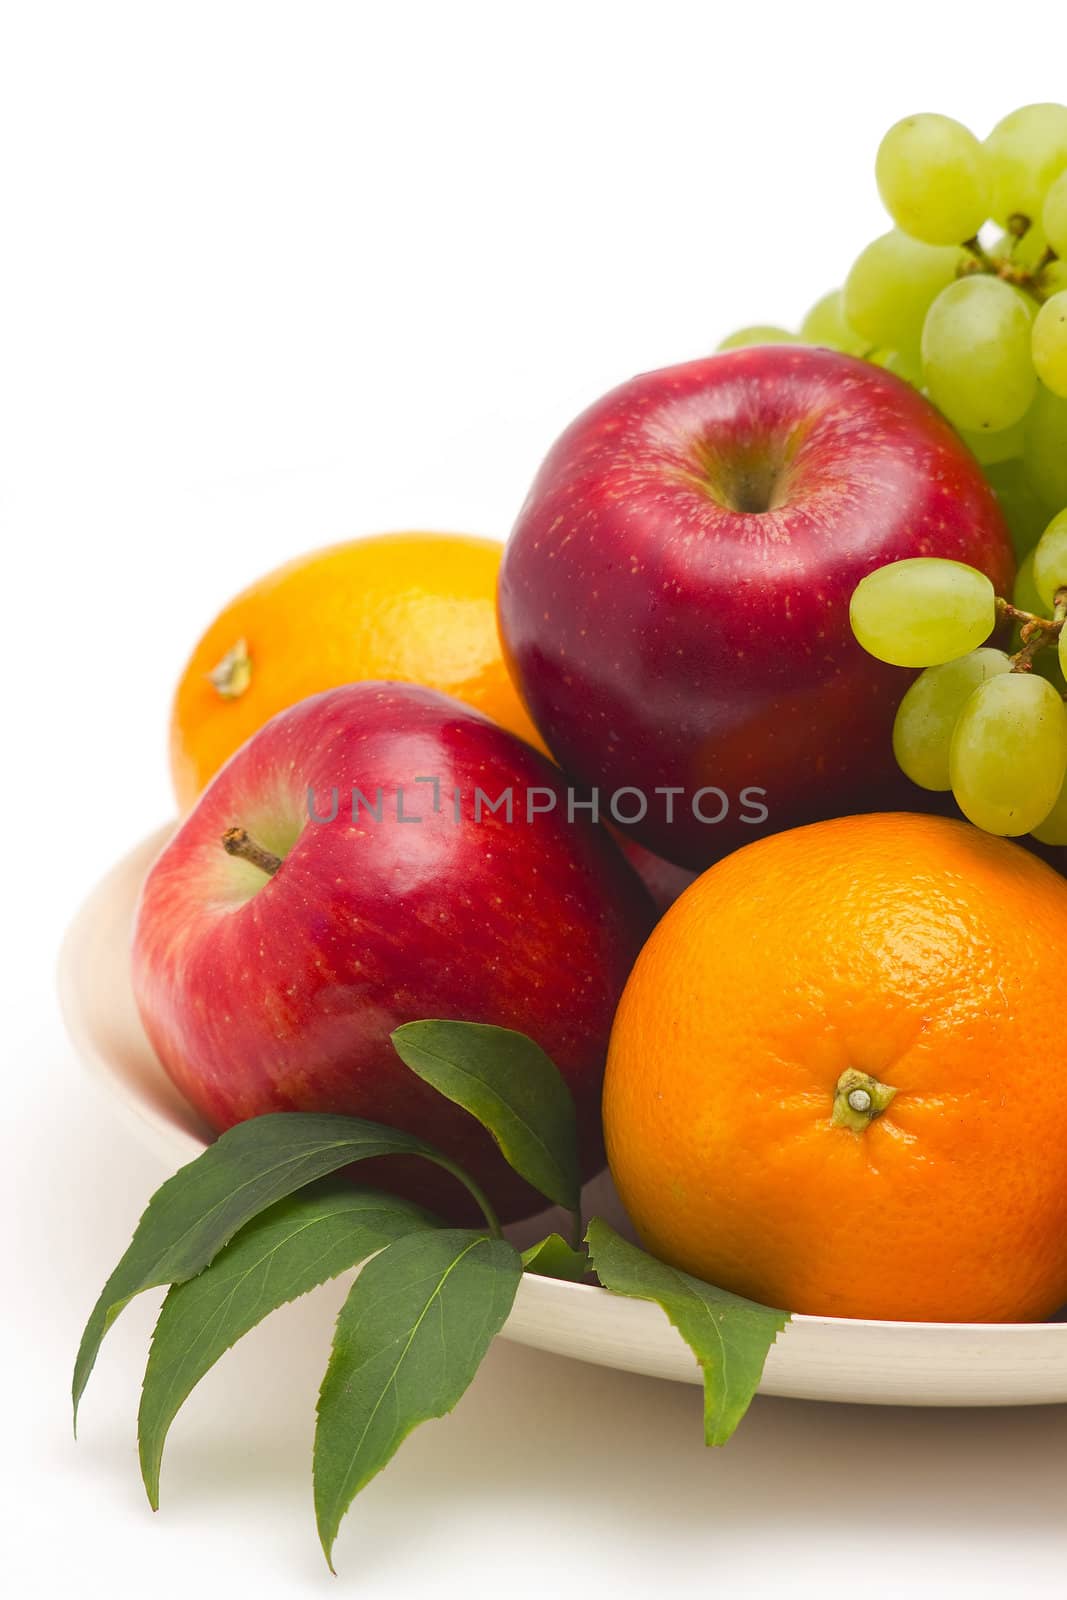 fresh fruits by miradrozdowski